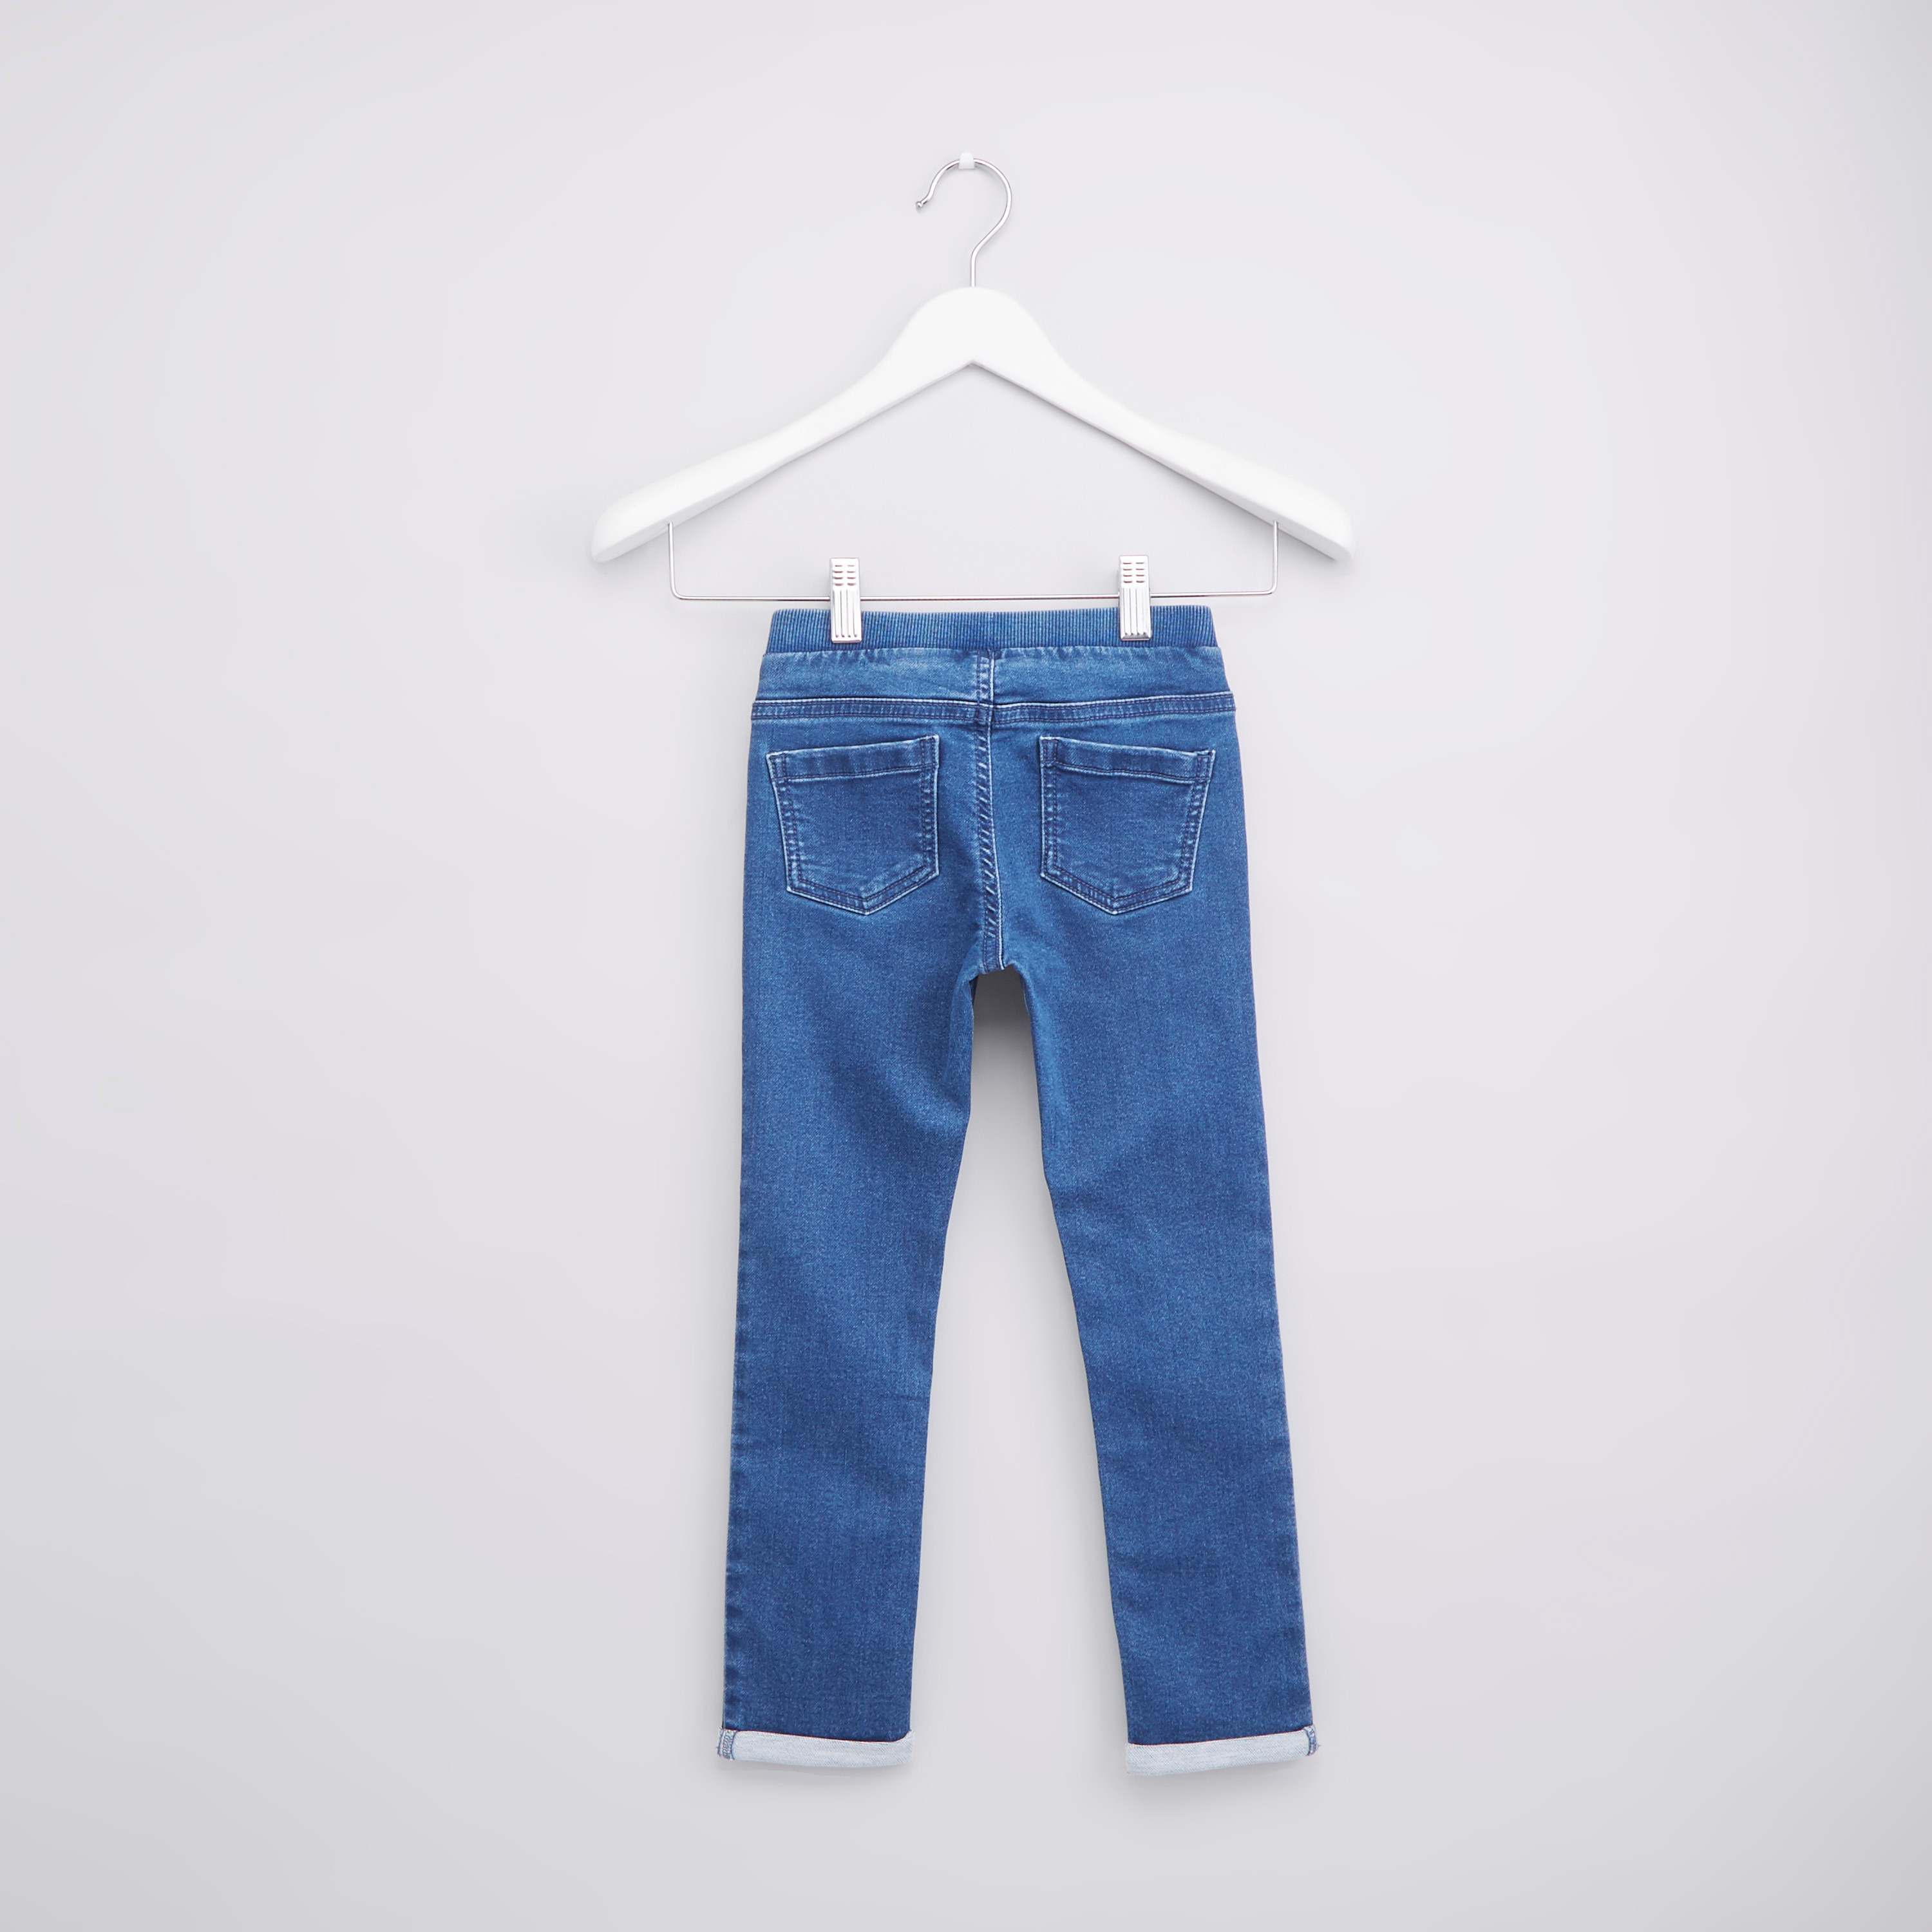 TrueSlim™ Premium Denim Jeggings – TrueSlim Jeans